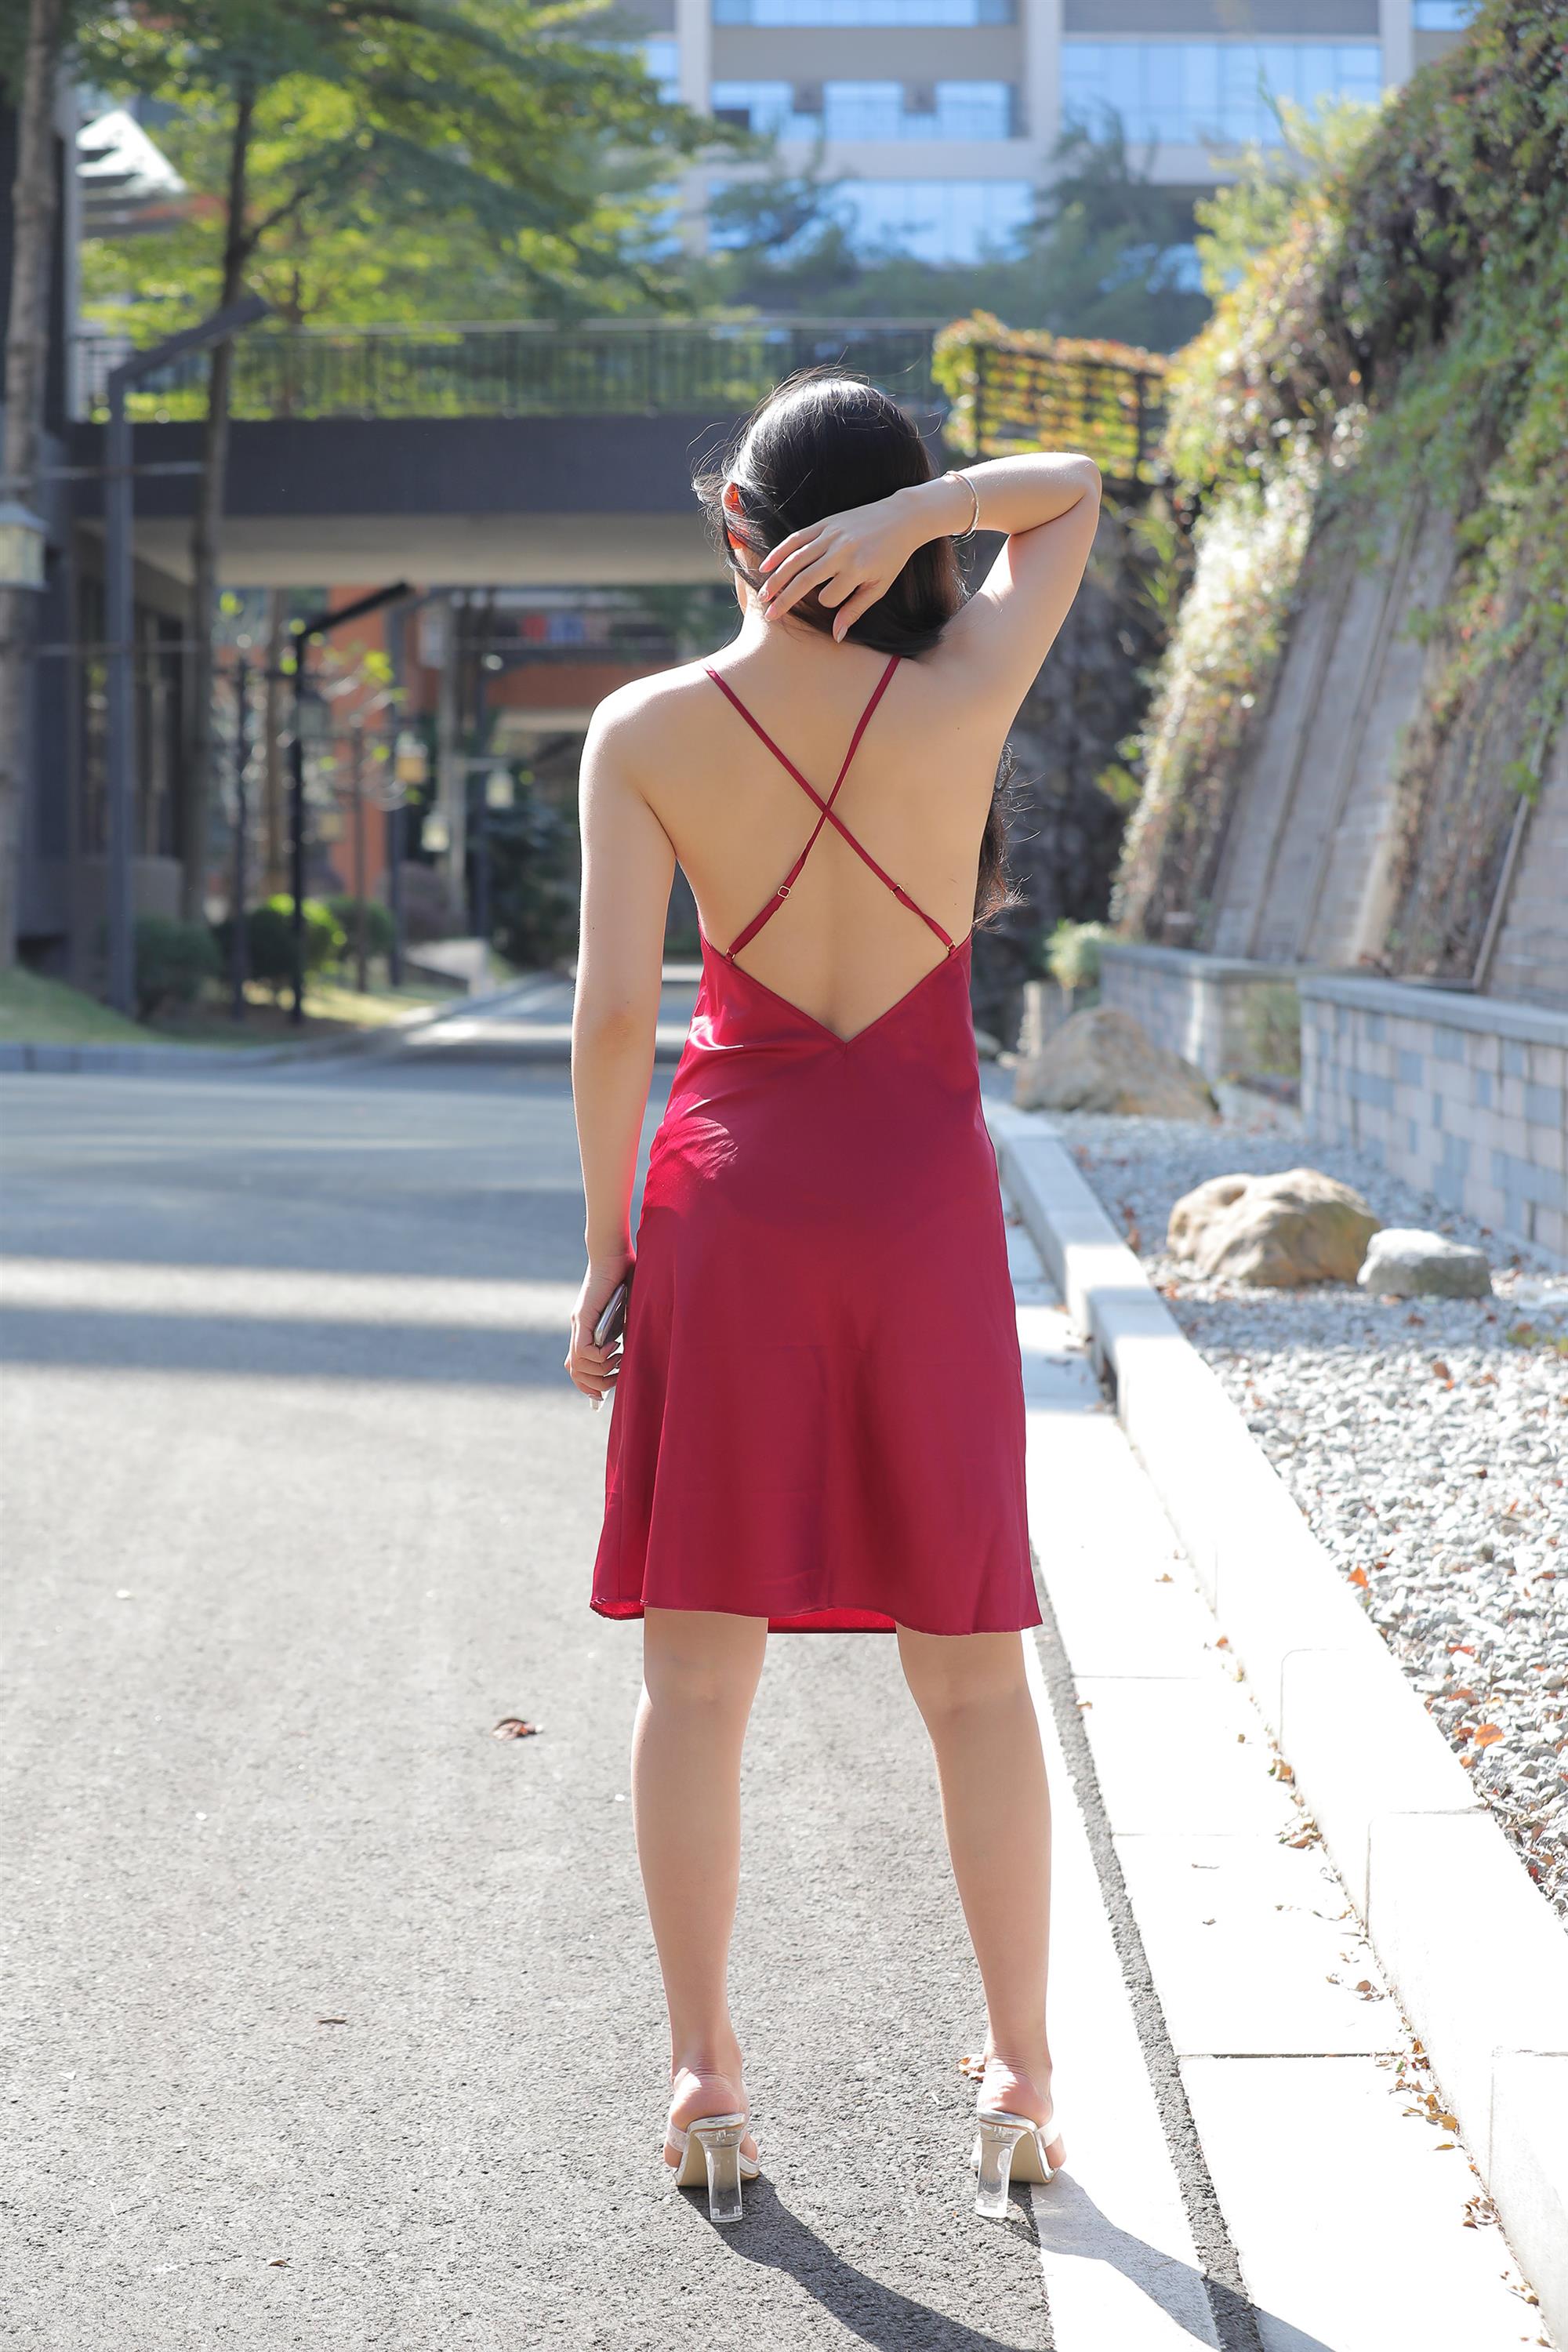 Street beauty in a red dress - 62.jpg